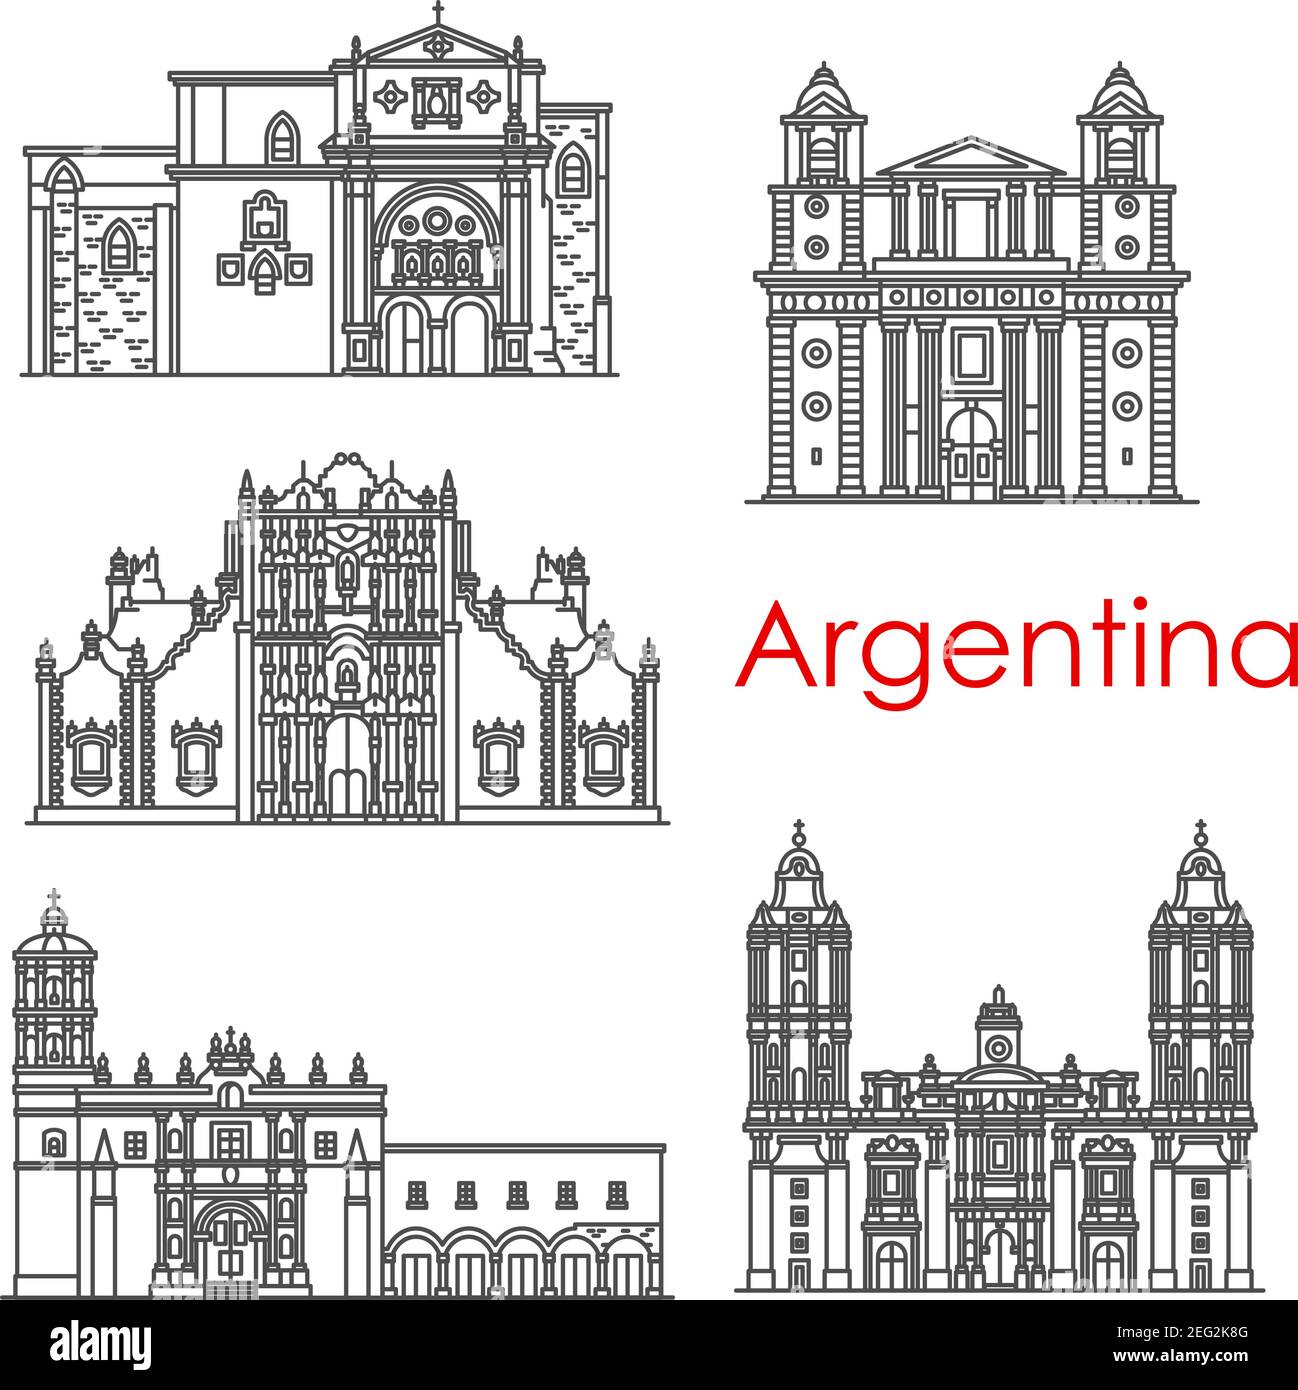 Argentinische Architektur Wahrzeichen und berühmte Gebäude Linie Fassade Ikonen. Vector Set von Santo Domingo Kathedrale, Sagrario Metropolitana Kloster oder Nue Stock Vektor